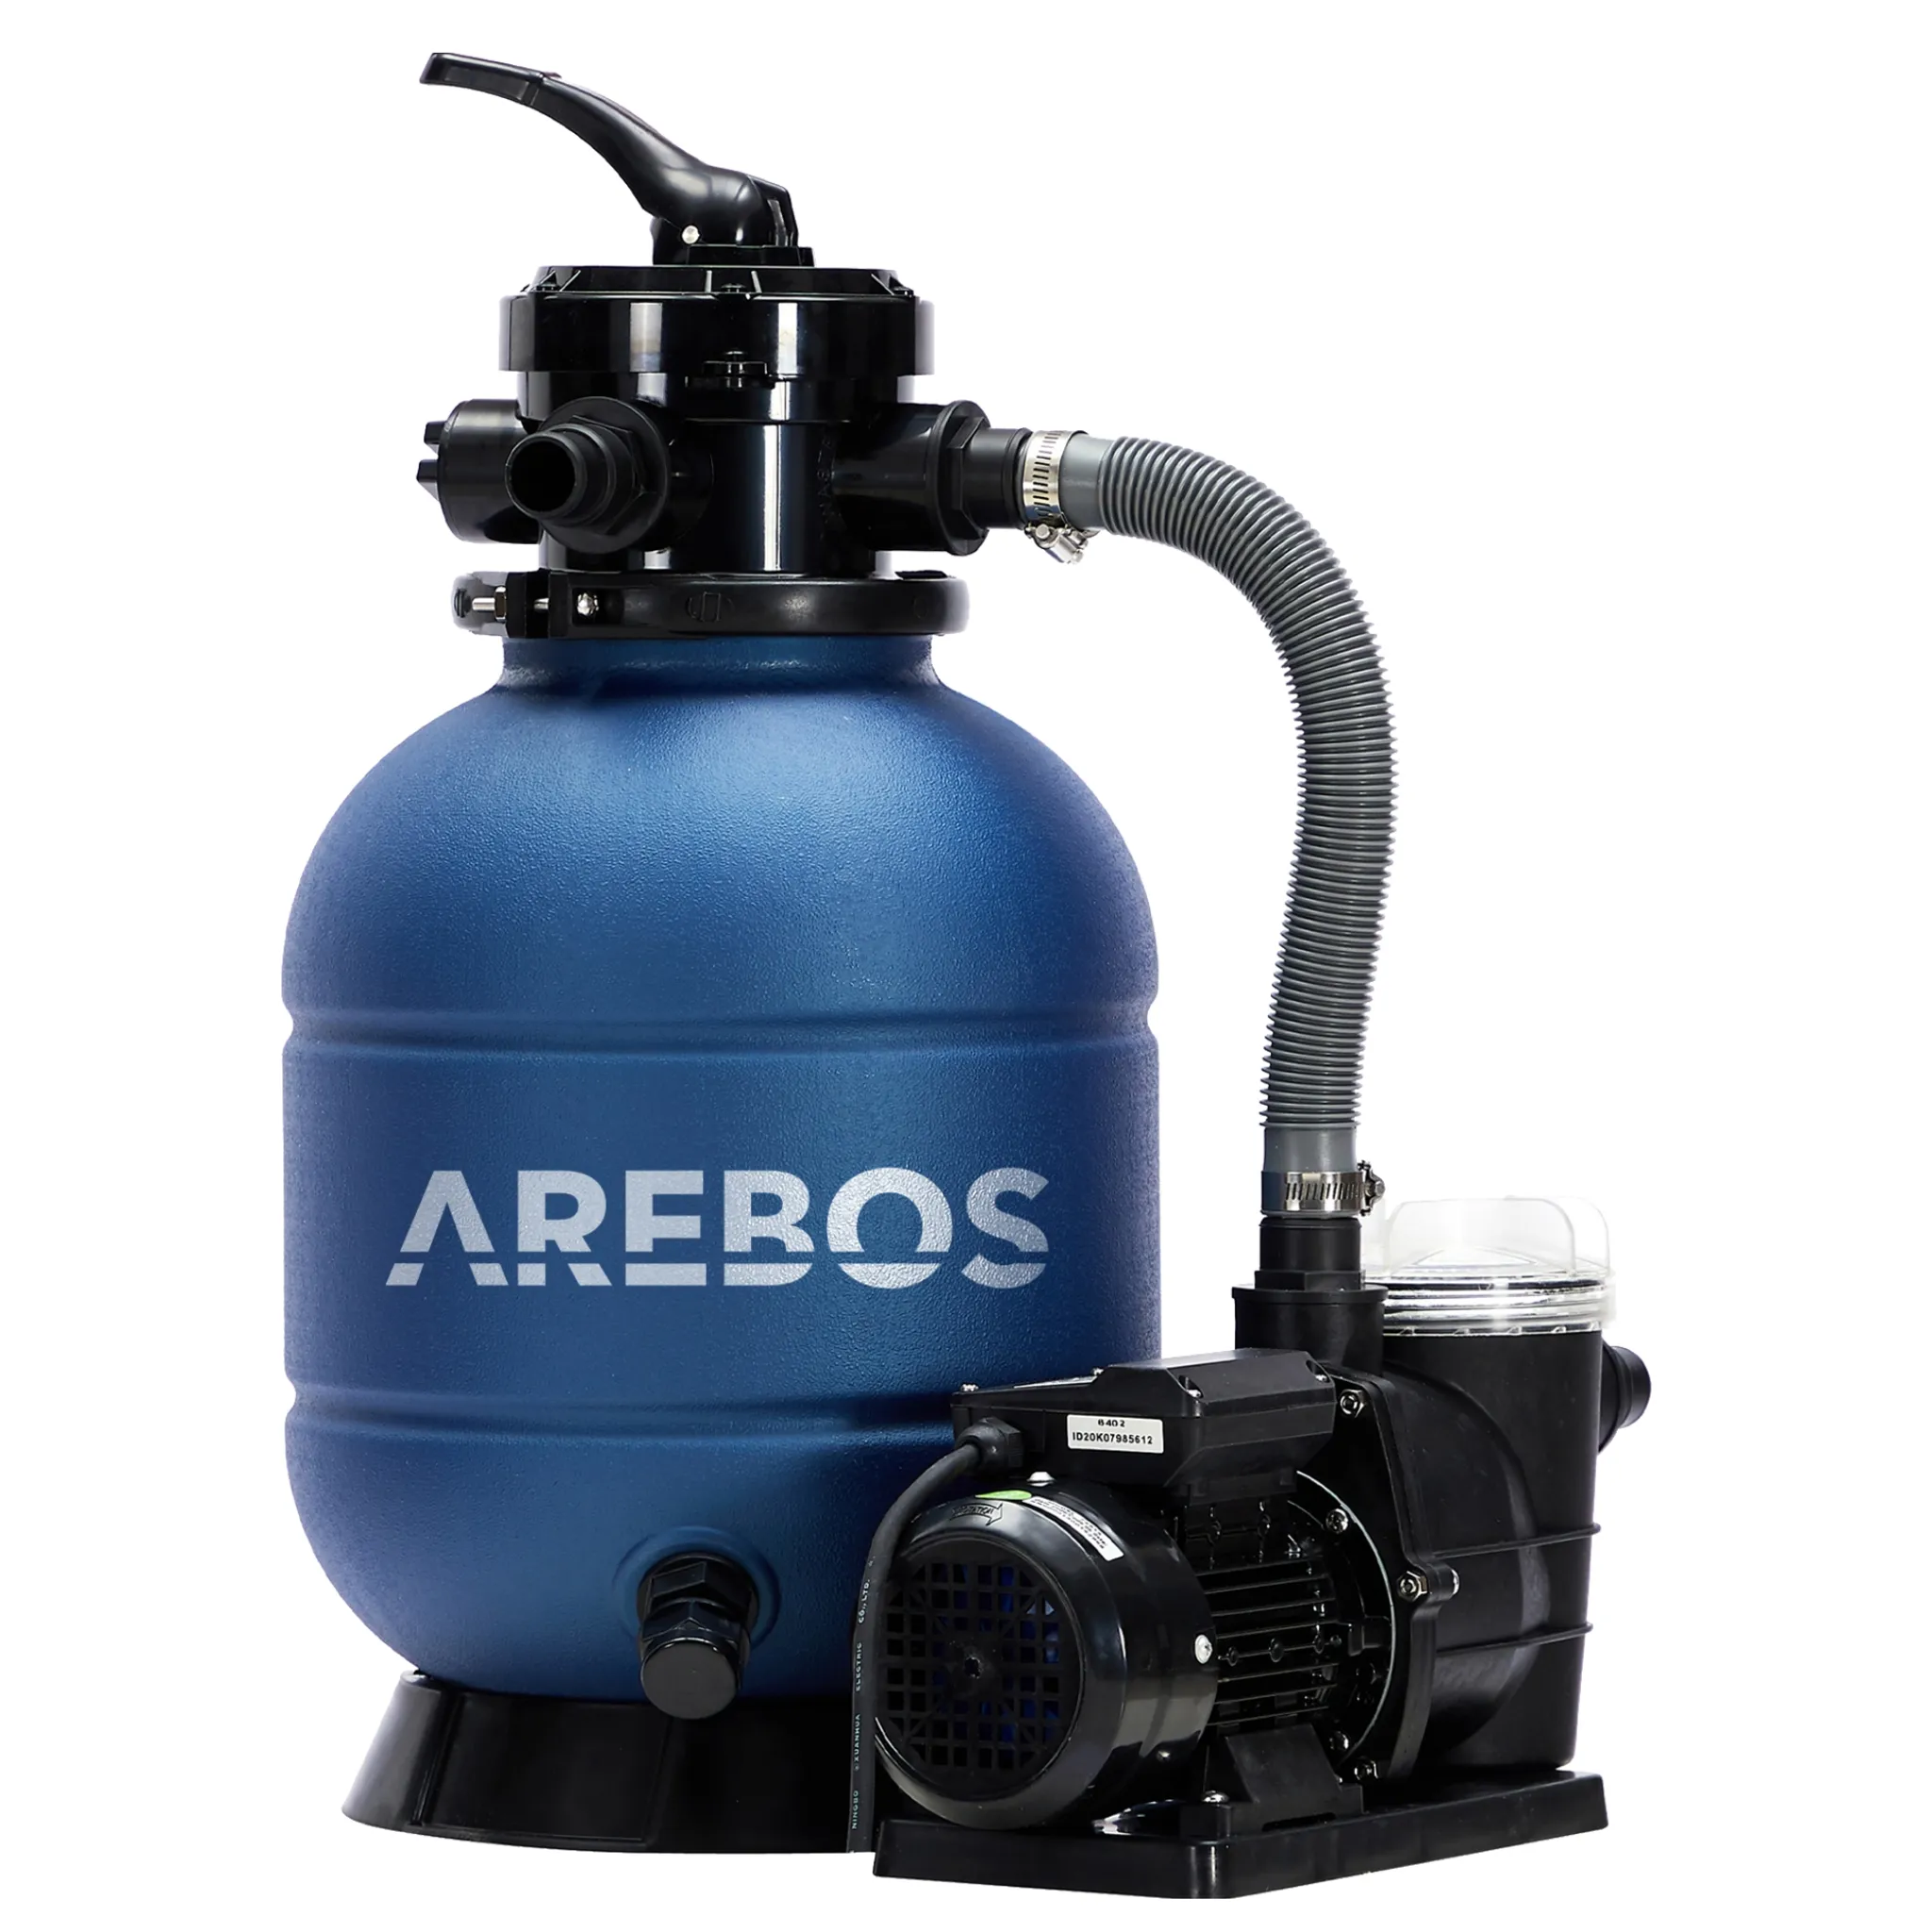 AREBOS Sandfilteranlage mit Pumpe, 400W